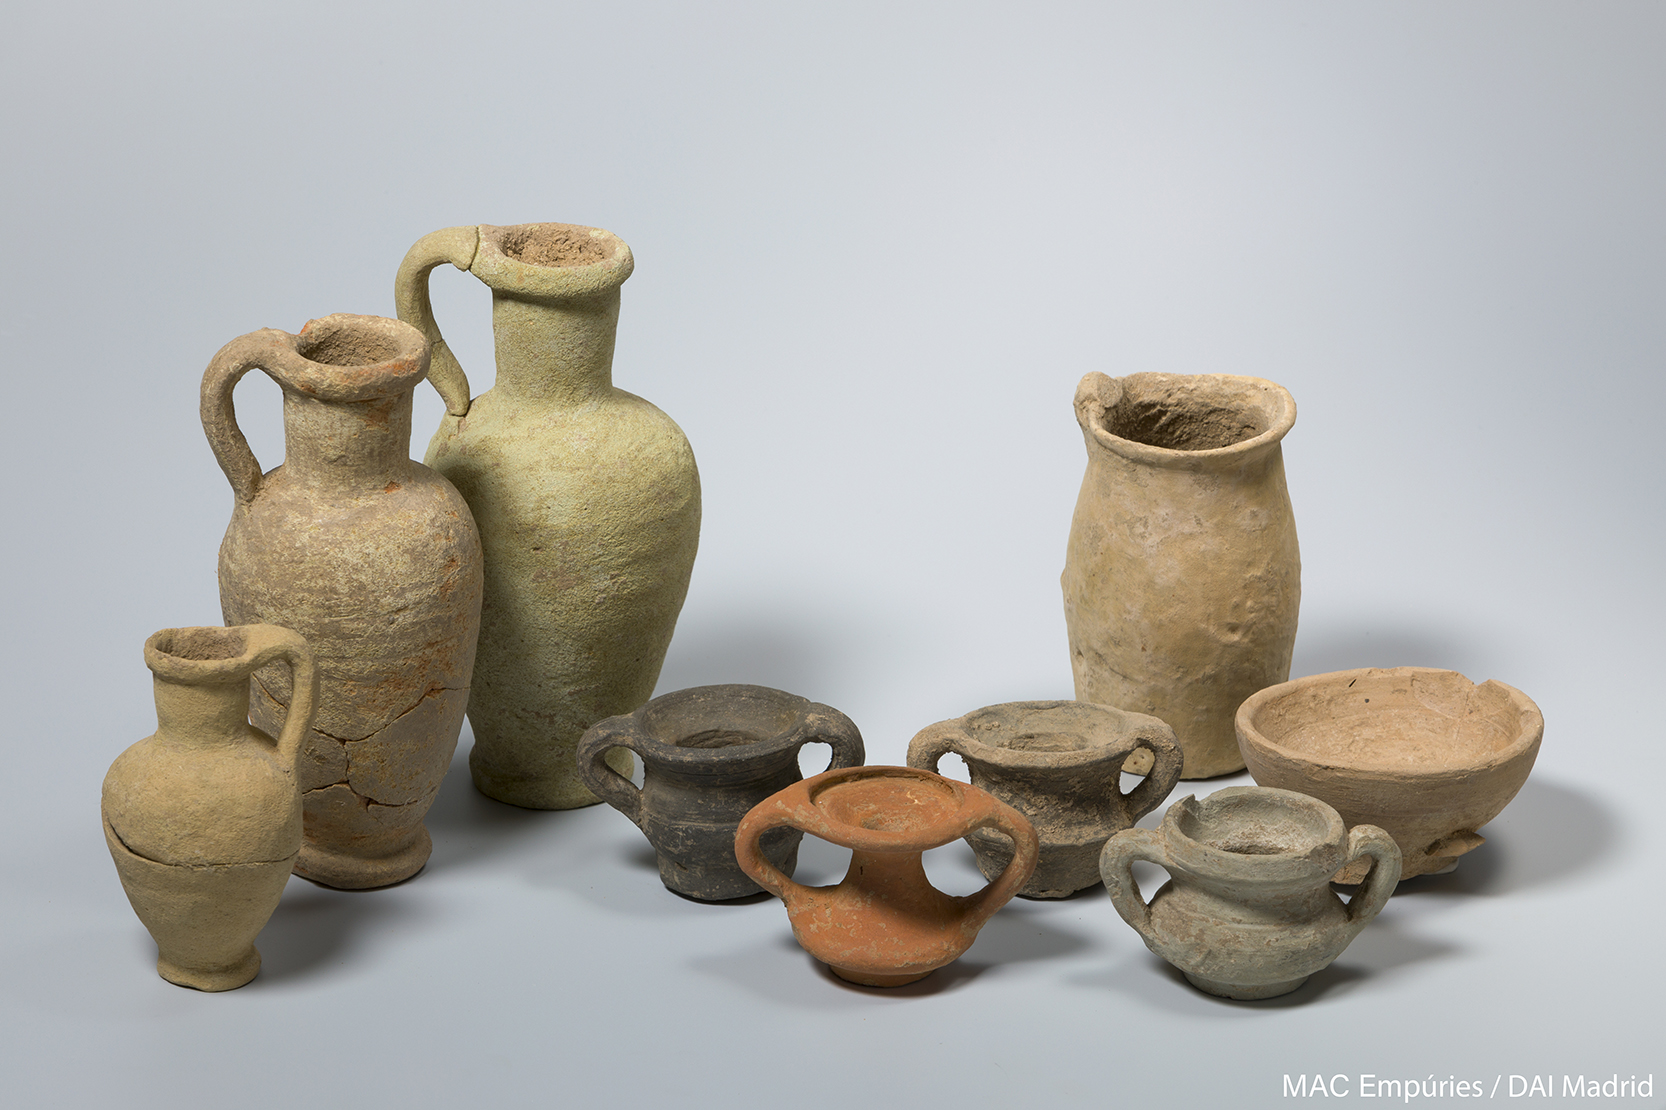 Conjunt de vasos votius trobats a l’interior d’una de les fosses associades al santuari, que proven la seva continuïtat fins al segle III aC